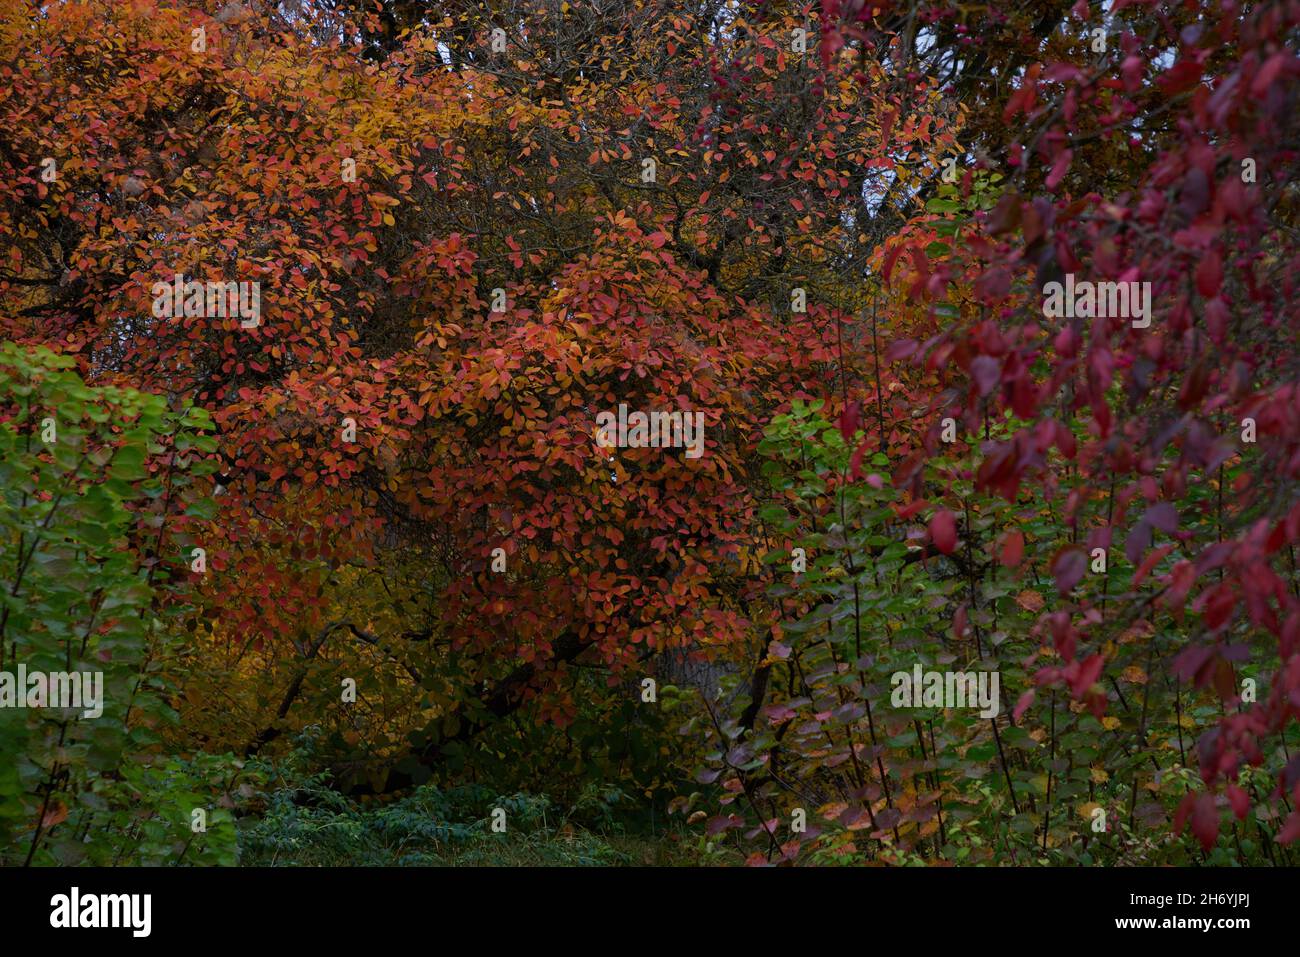 Cotinus coggygria in autumn. Stock Photo